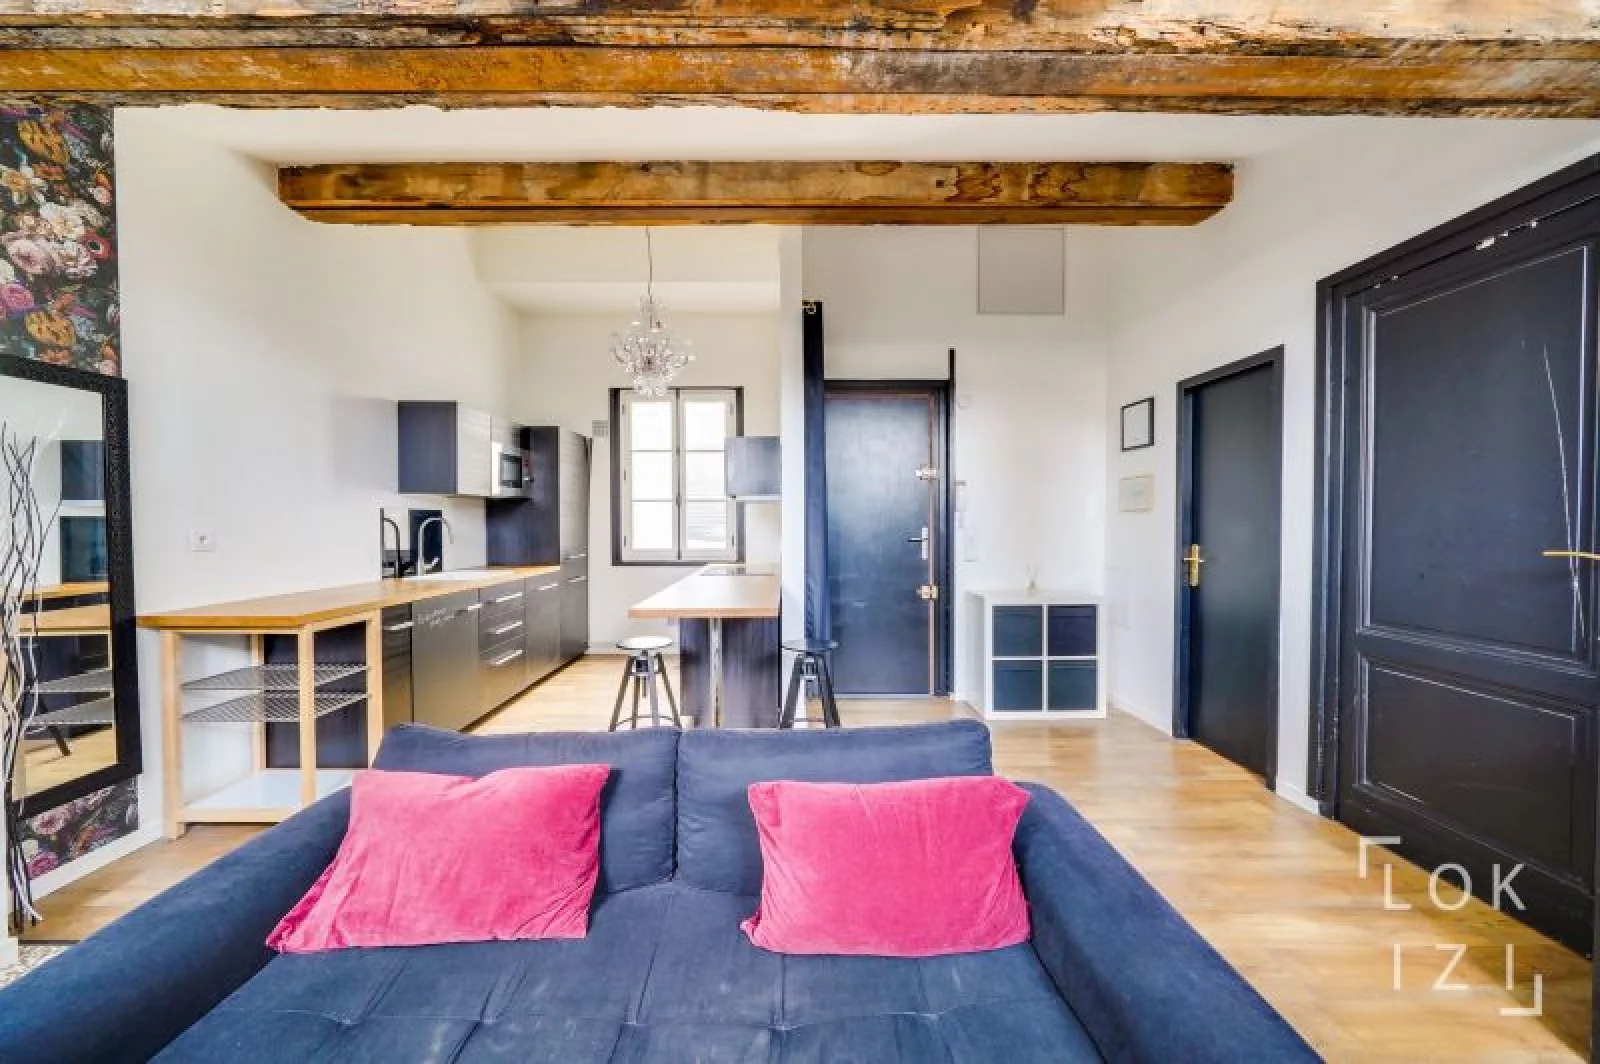 Location appartement meublé 2 pièces 39m² (Bordeaux centre - Victor Hugo)